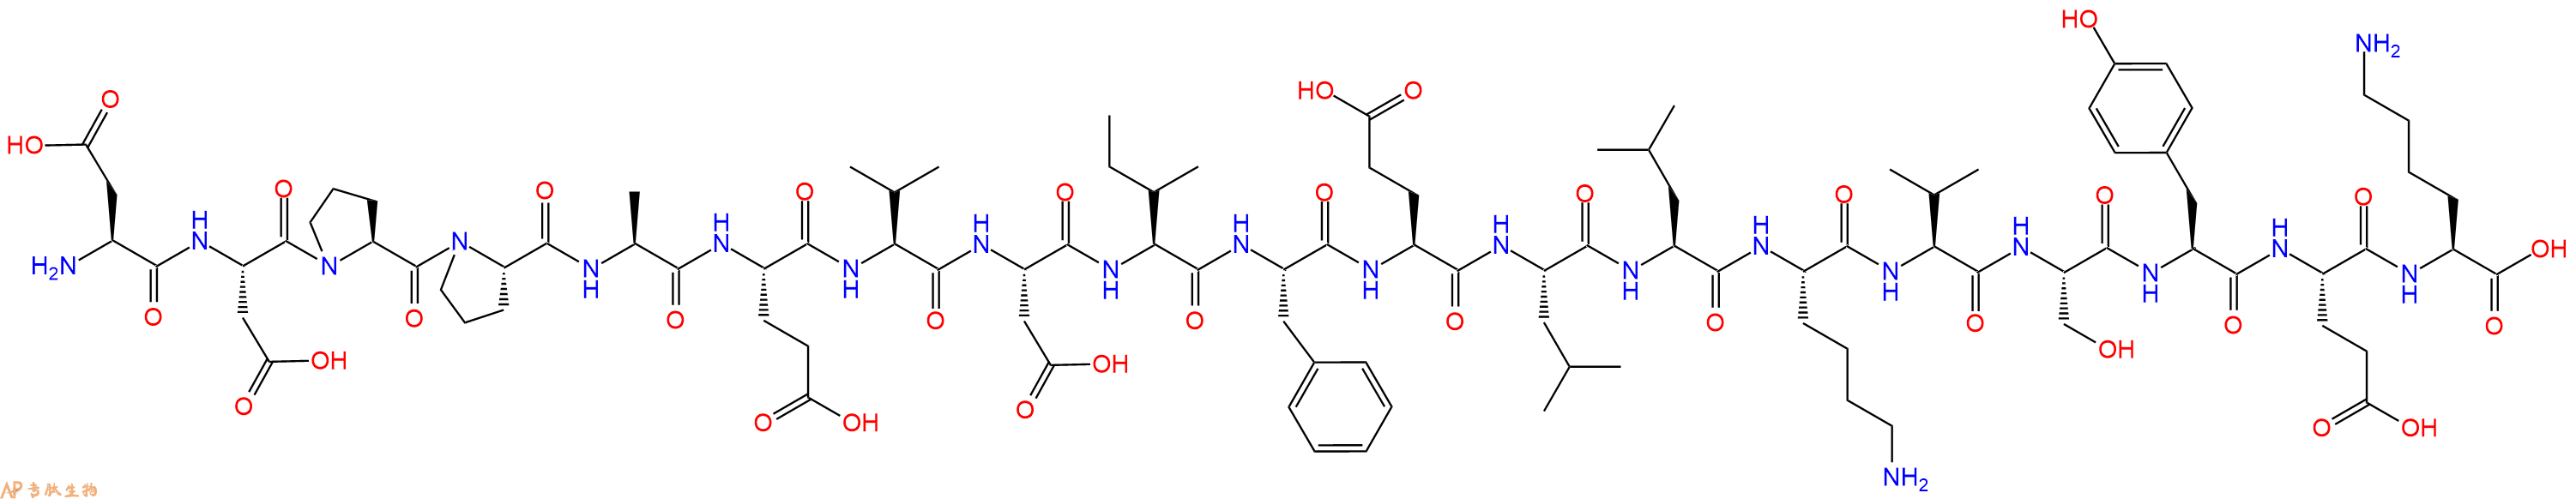 专肽生物产品H2N-Asp-Asp-Pro-Pro-Ala-Glu-Val-Asp-Ile-Phe-Glu-Le